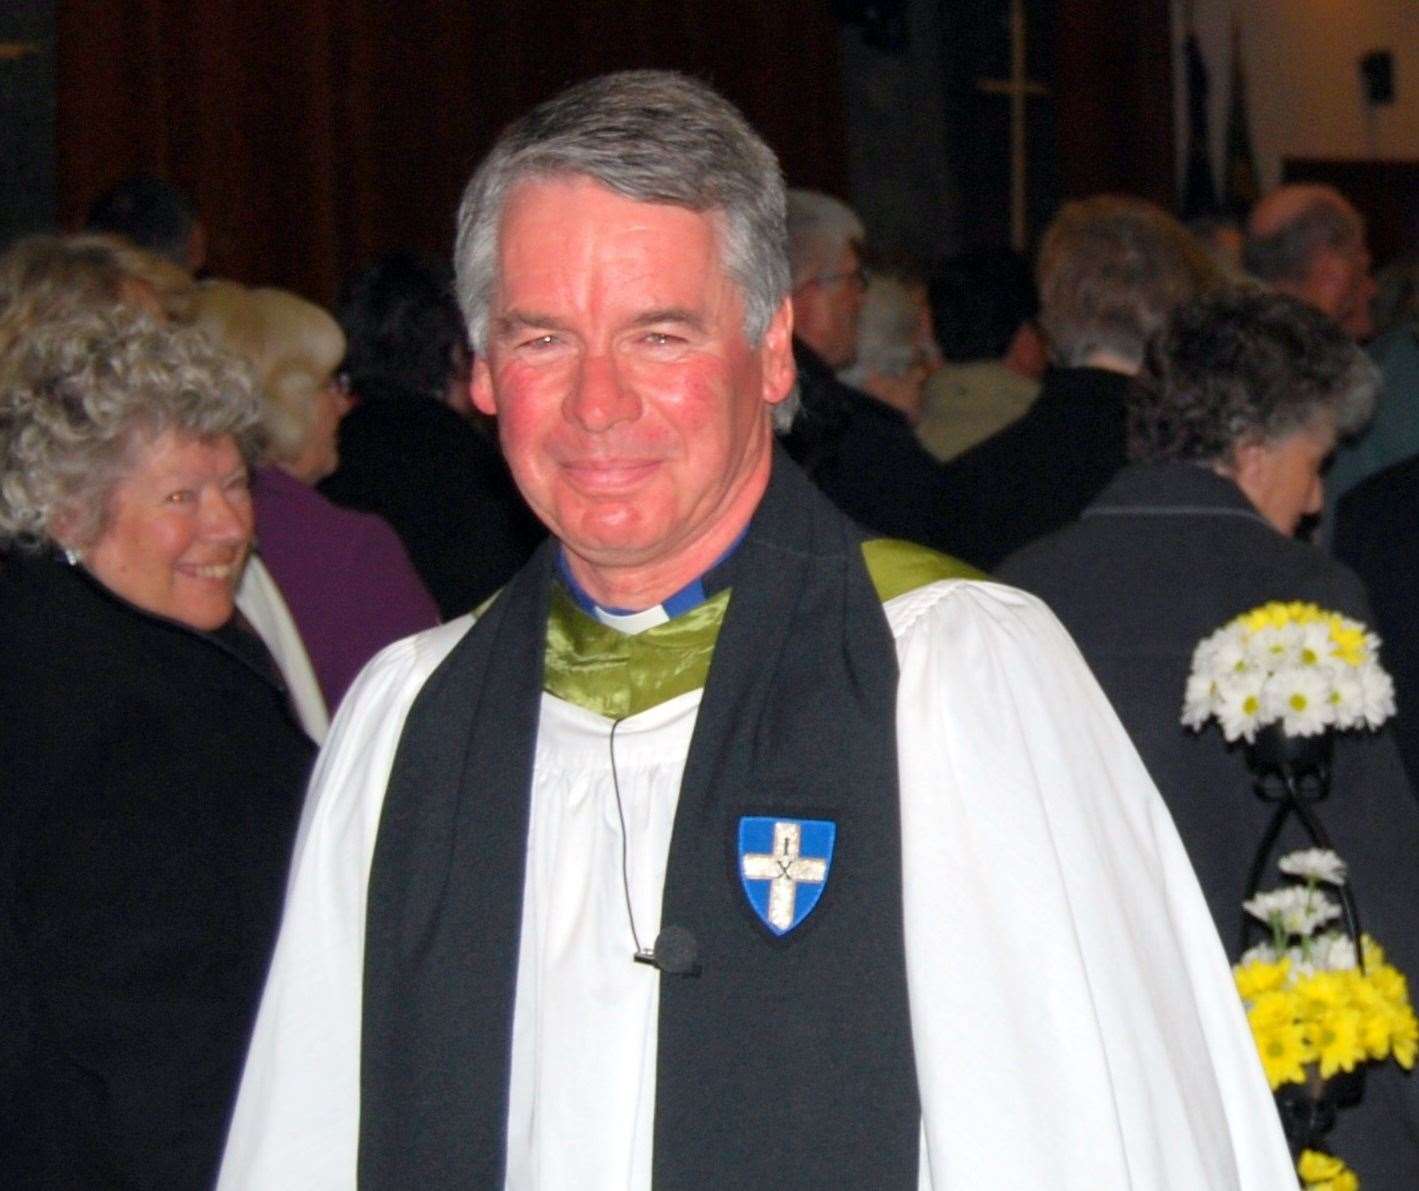 Rev Canon Arthur Houston of St Faith's Church, Maidstone